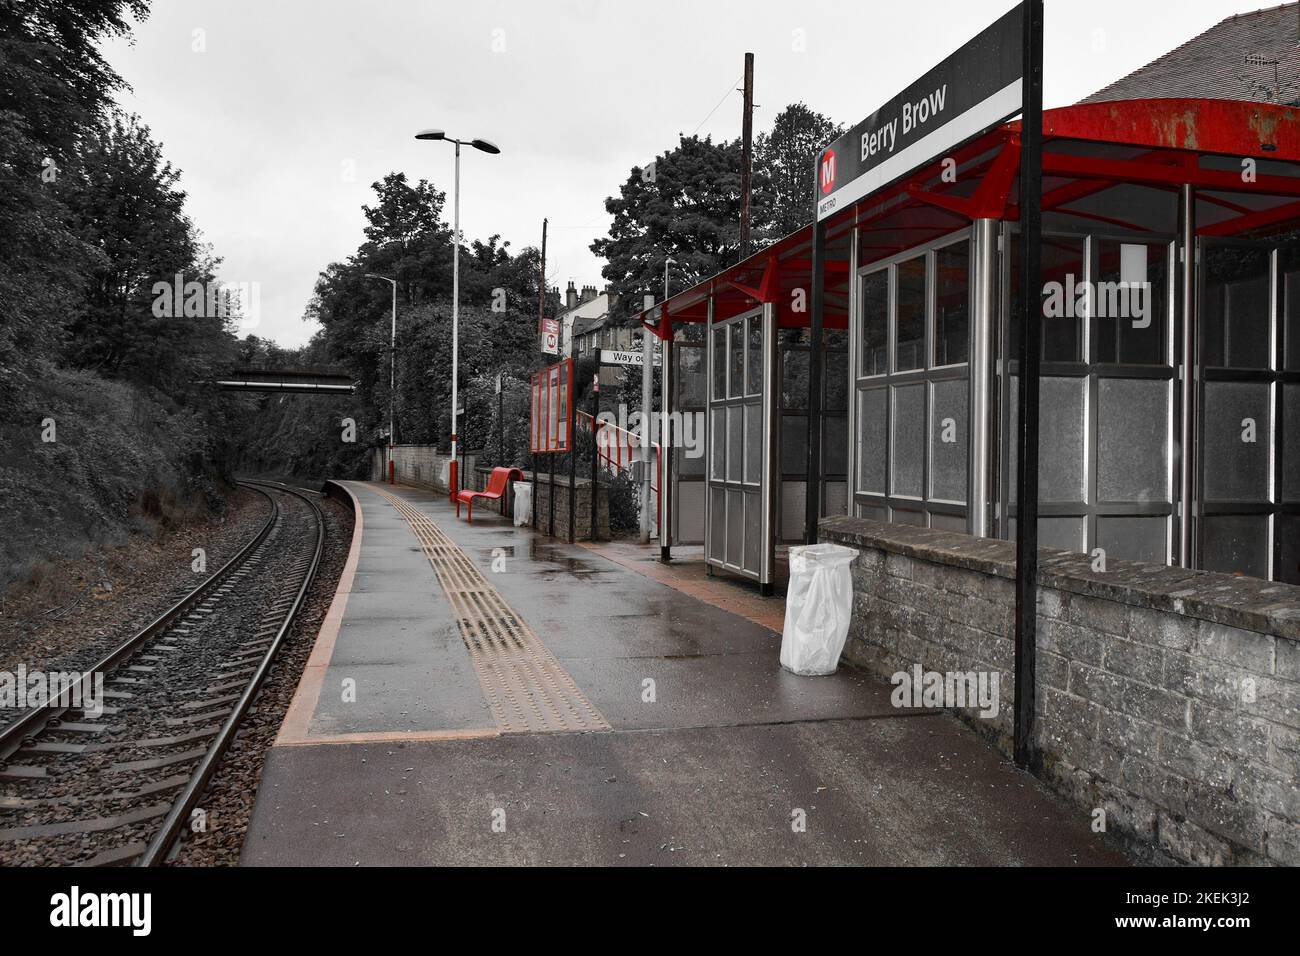 Berry Brow Stazione ferroviaria, una singola fermata piattaforma sulla Penistone linea a sud di Huddersfield Foto Stock